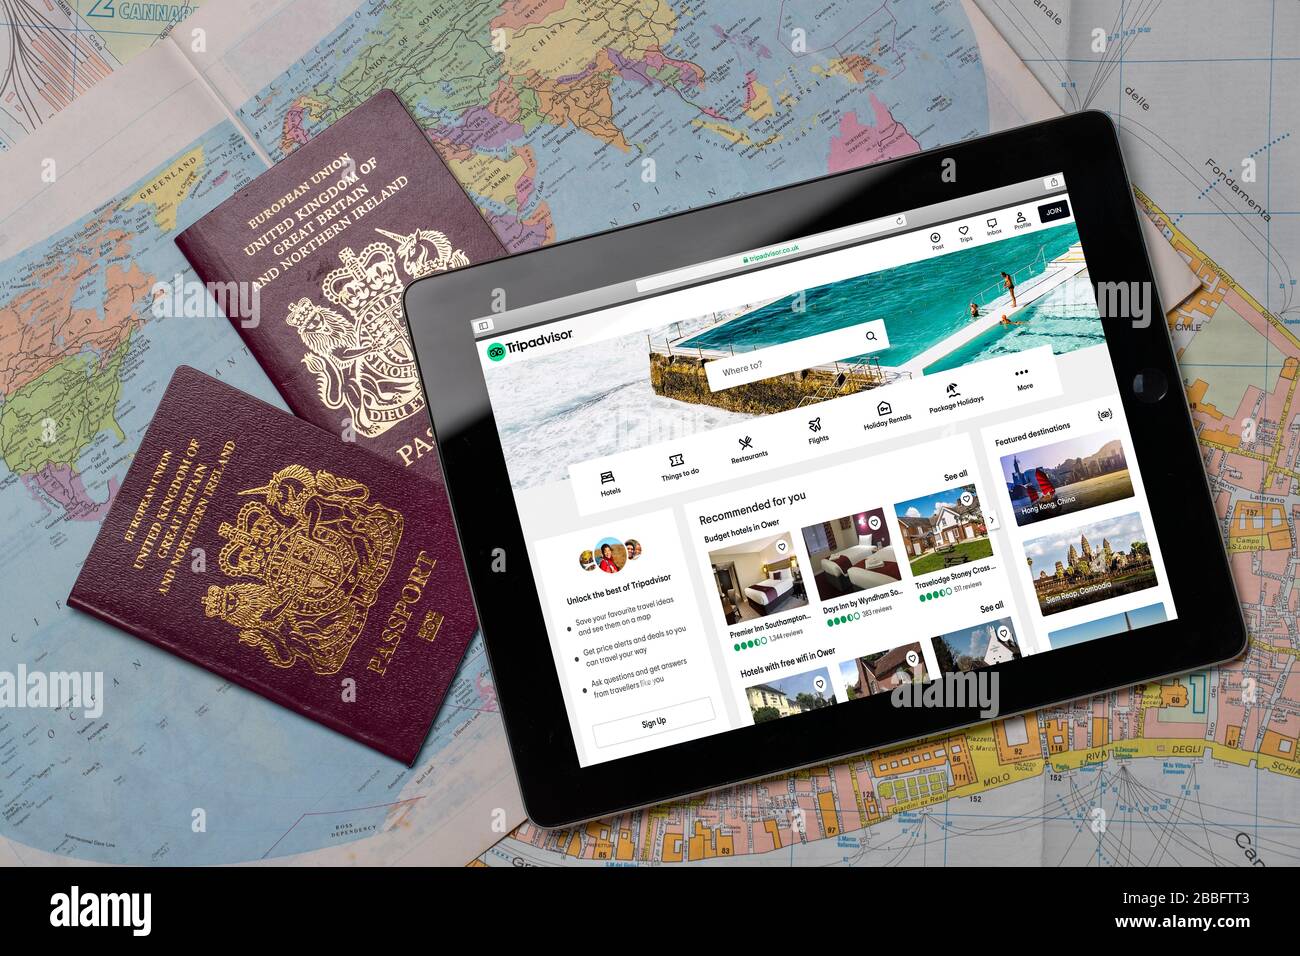 Reise Advisor Website auf einem iPad oder Tablet. (Nur redaktionelle Verwendung) Stockfoto